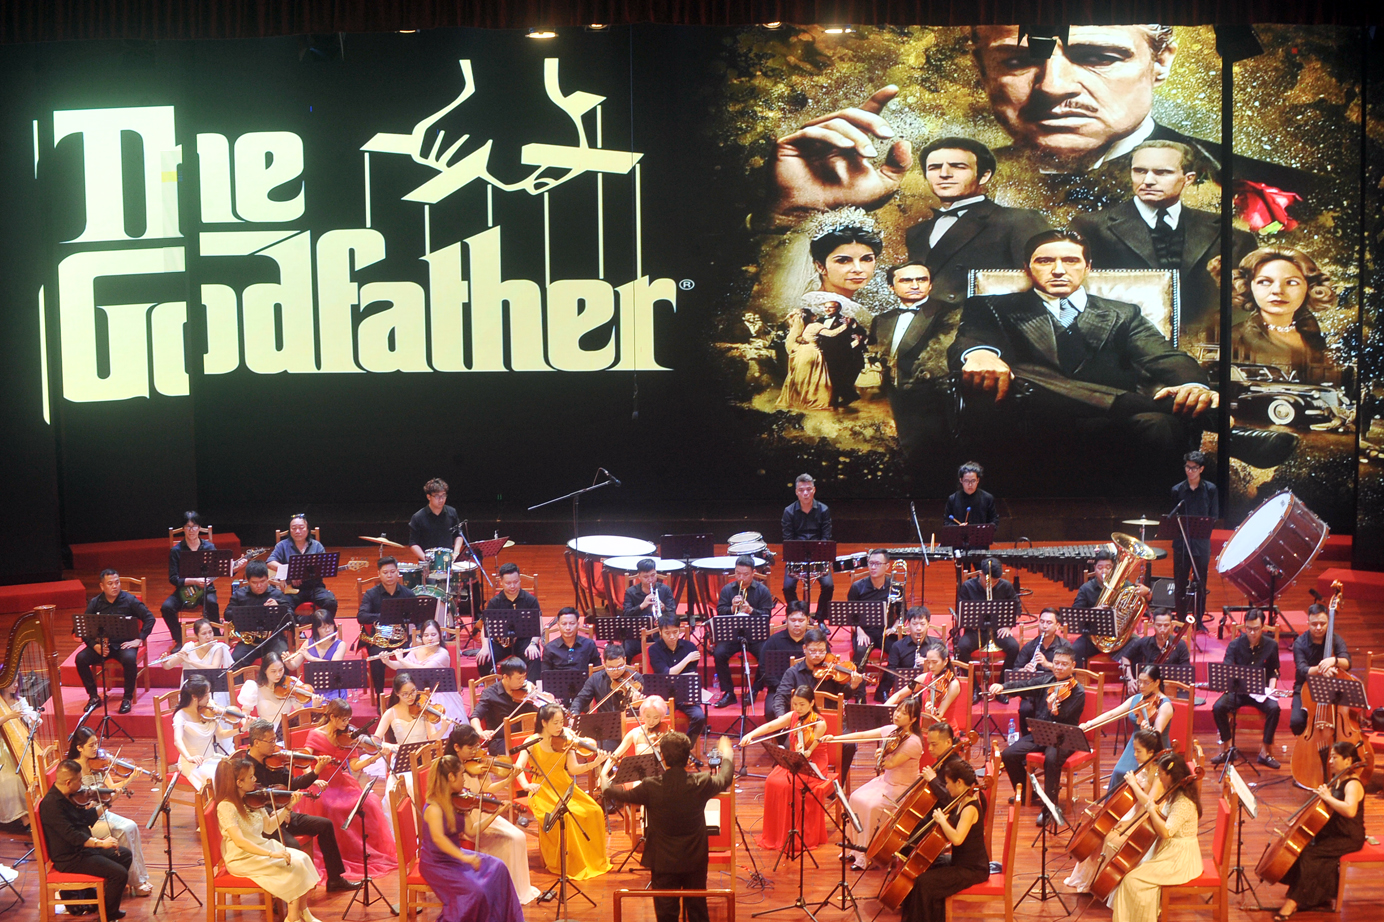 Chương trình hòa nhạc, do các nghệ sĩ giao hưởng nổi tiếng của Việt Nam trình diễn